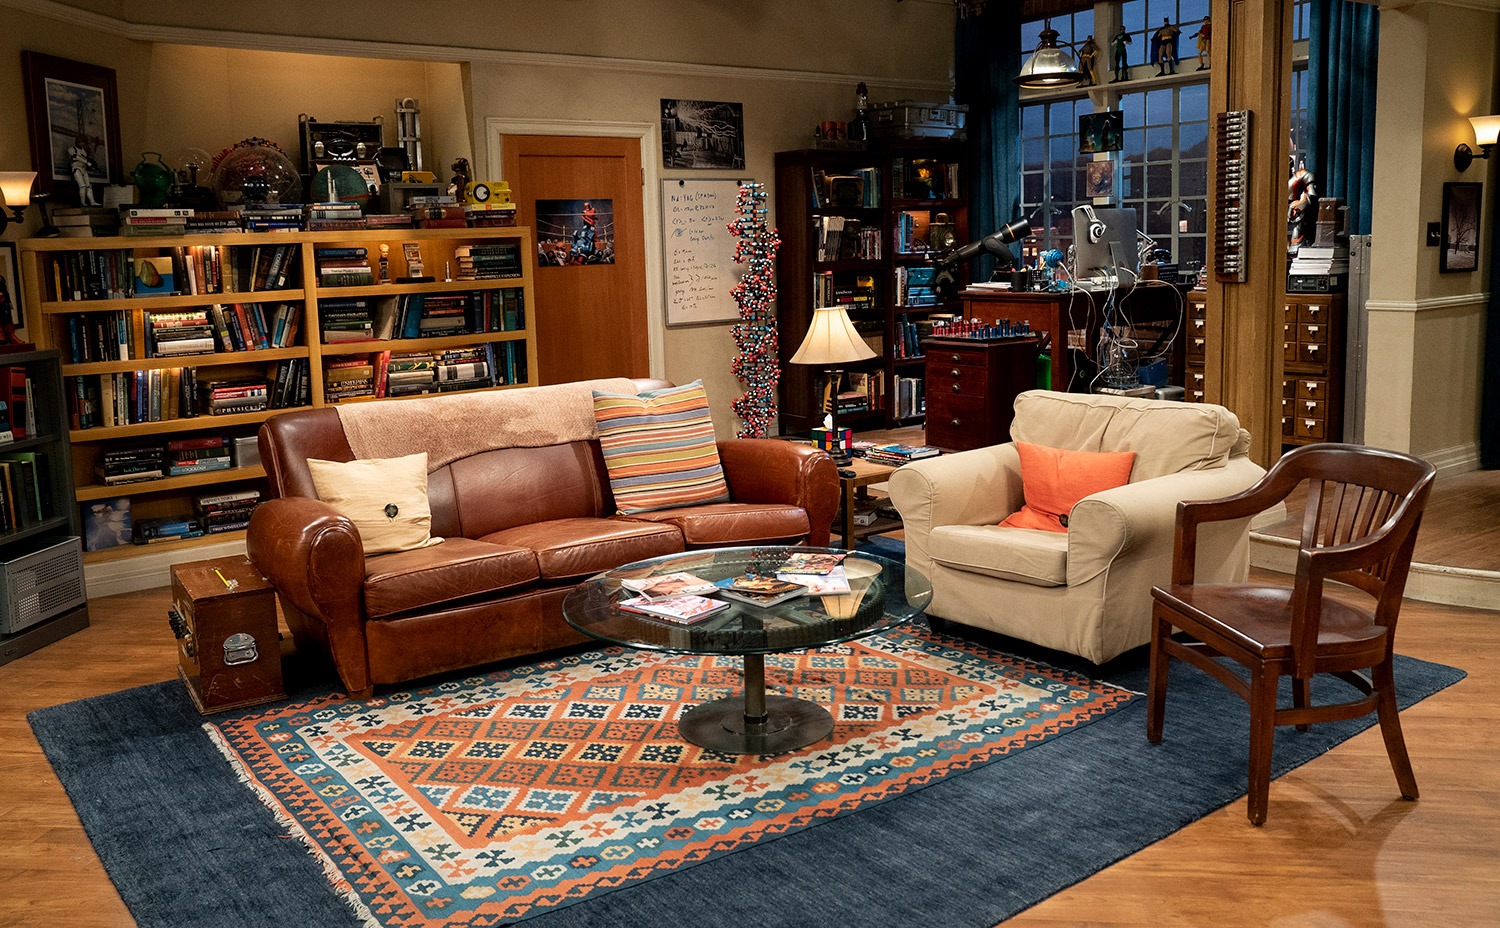 The Big Bang Theory Studio